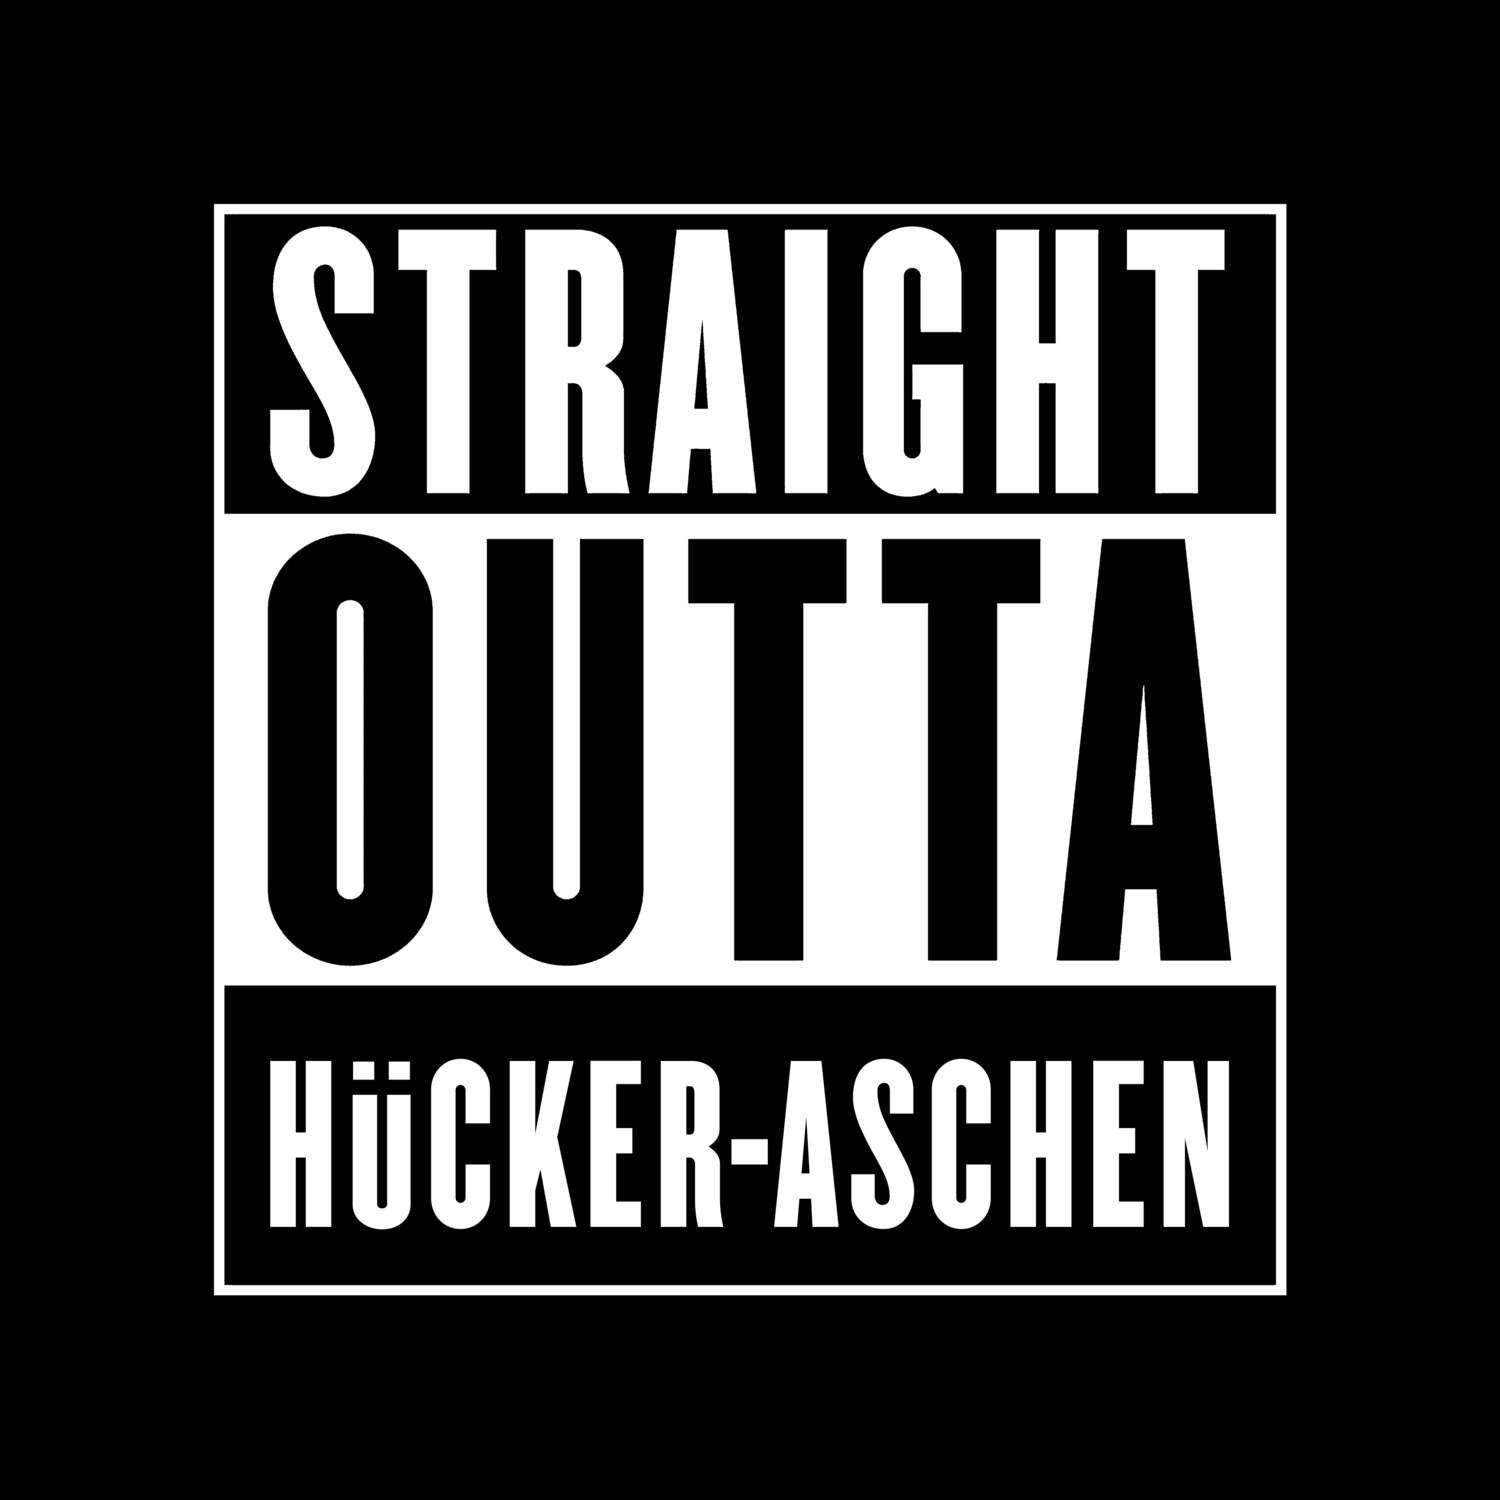 Hücker-Aschen T-Shirt »Straight Outta«